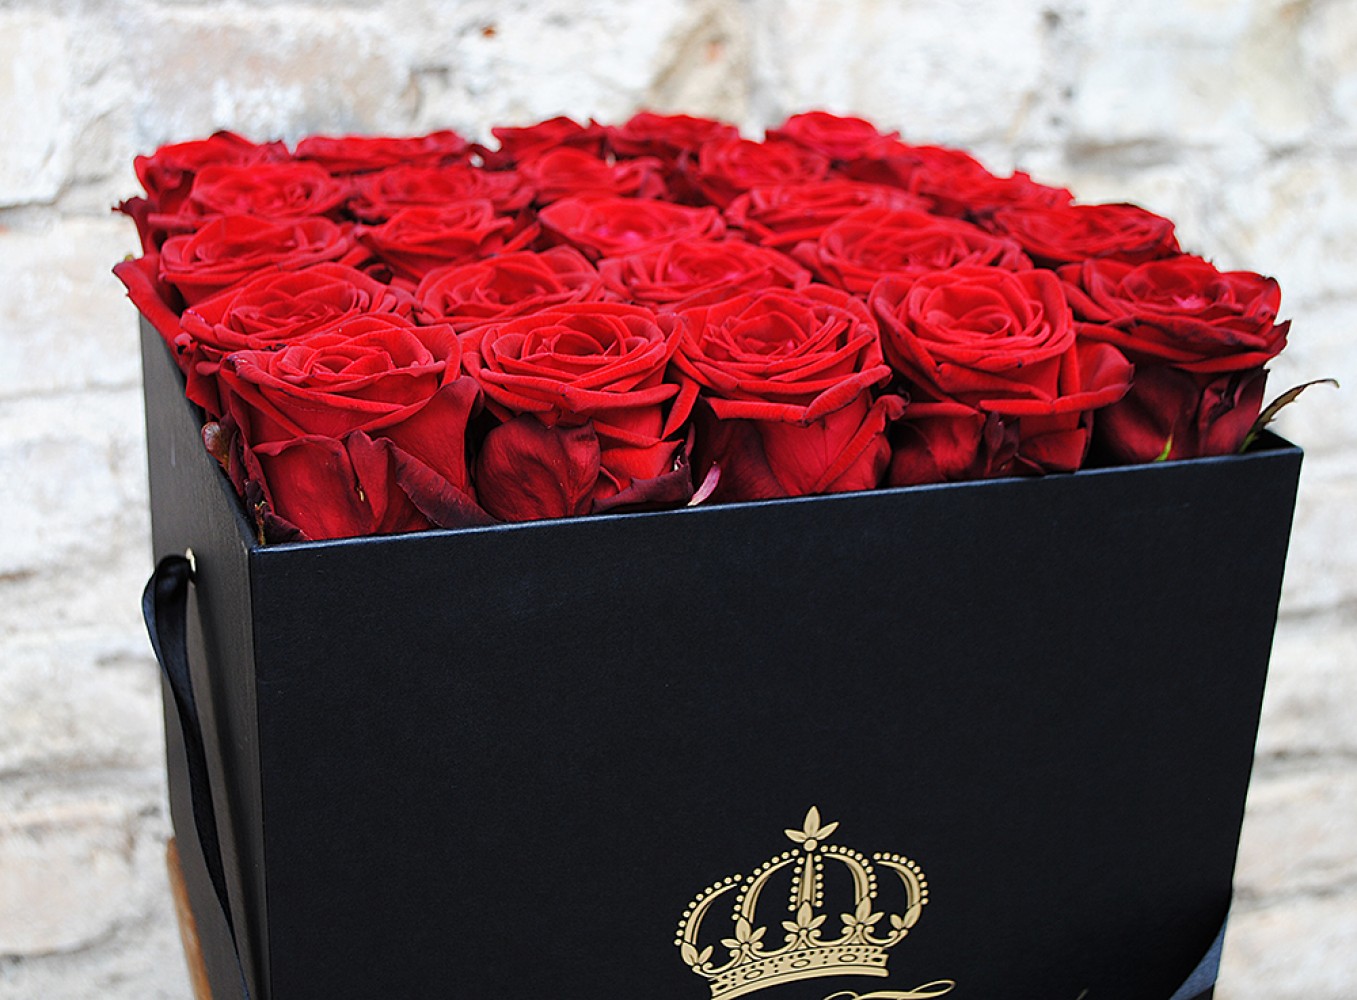 Raudonos rožės dėžutėje ROY